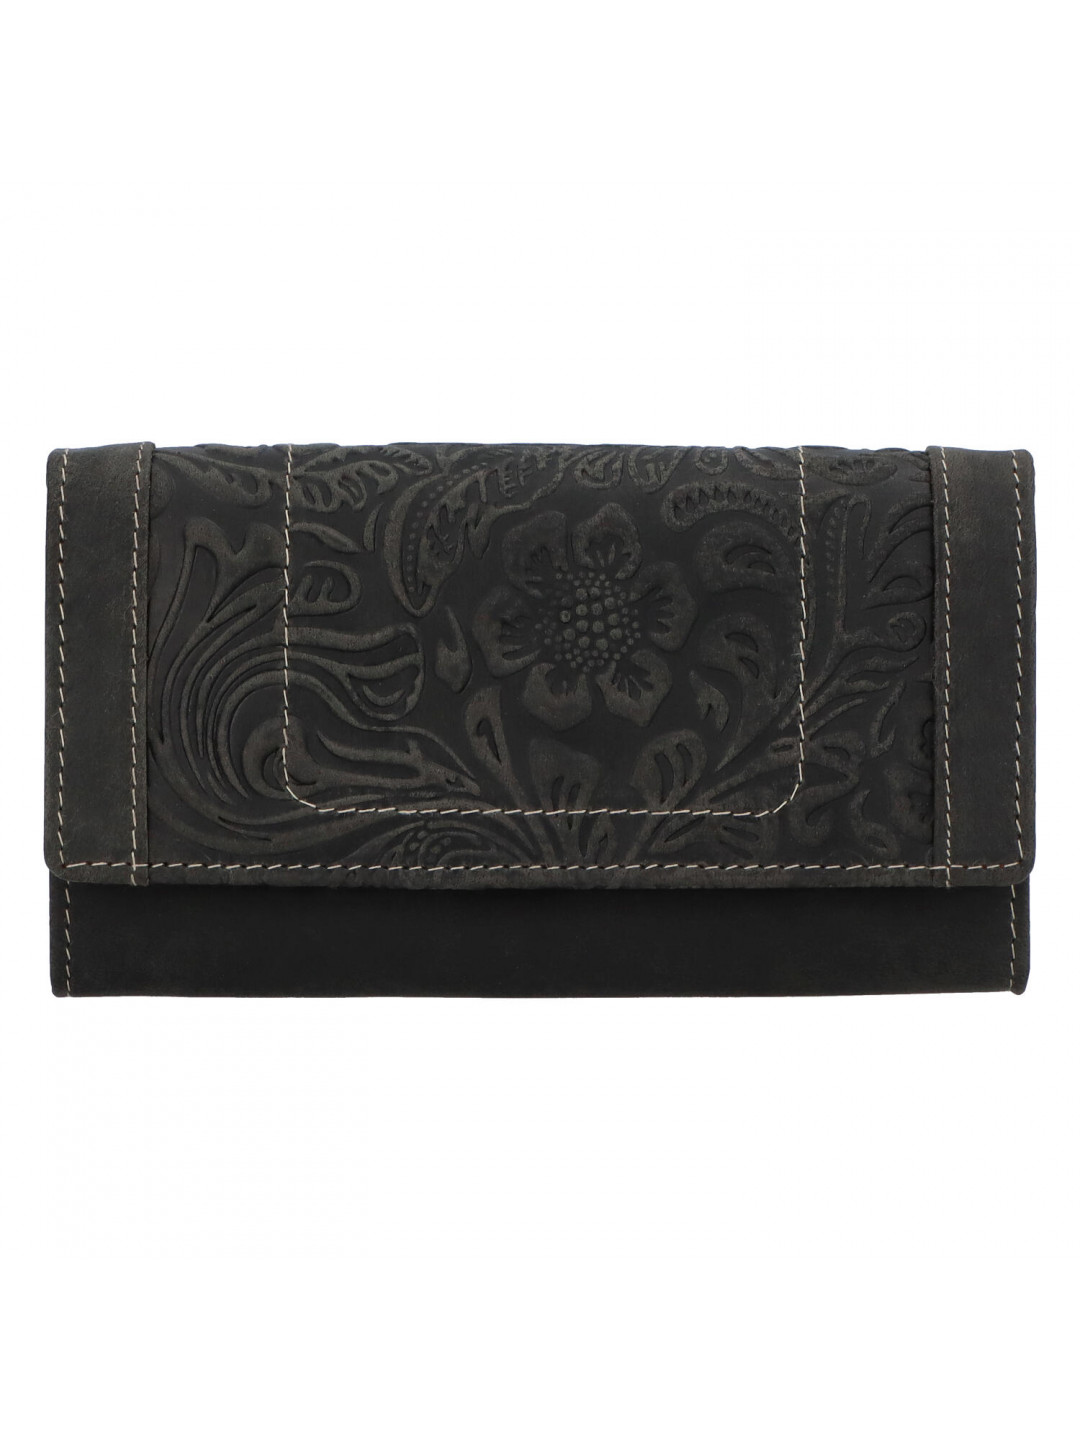 Kožená peněženka černá se vzorem – Tomas Mayana